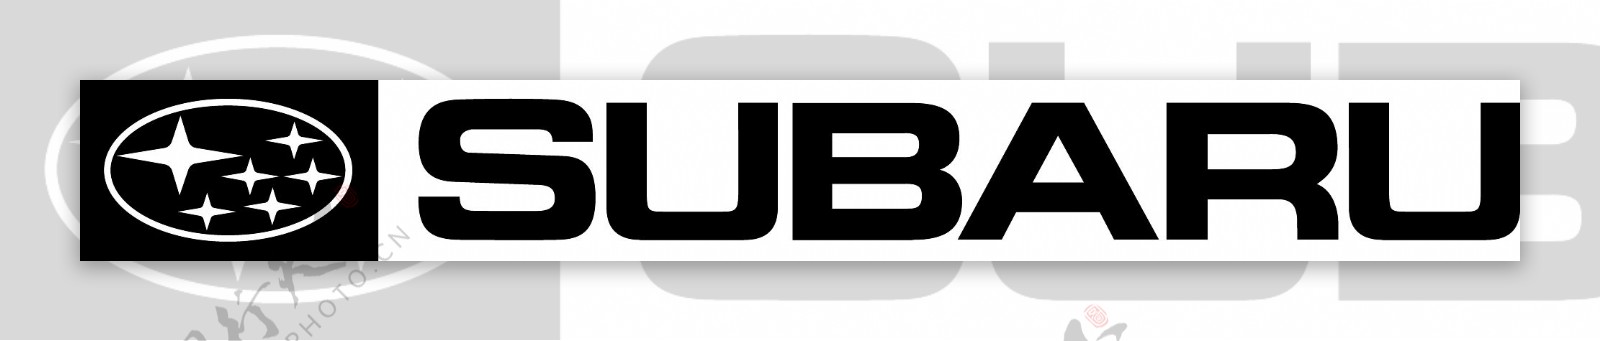 斯巴鲁logo3